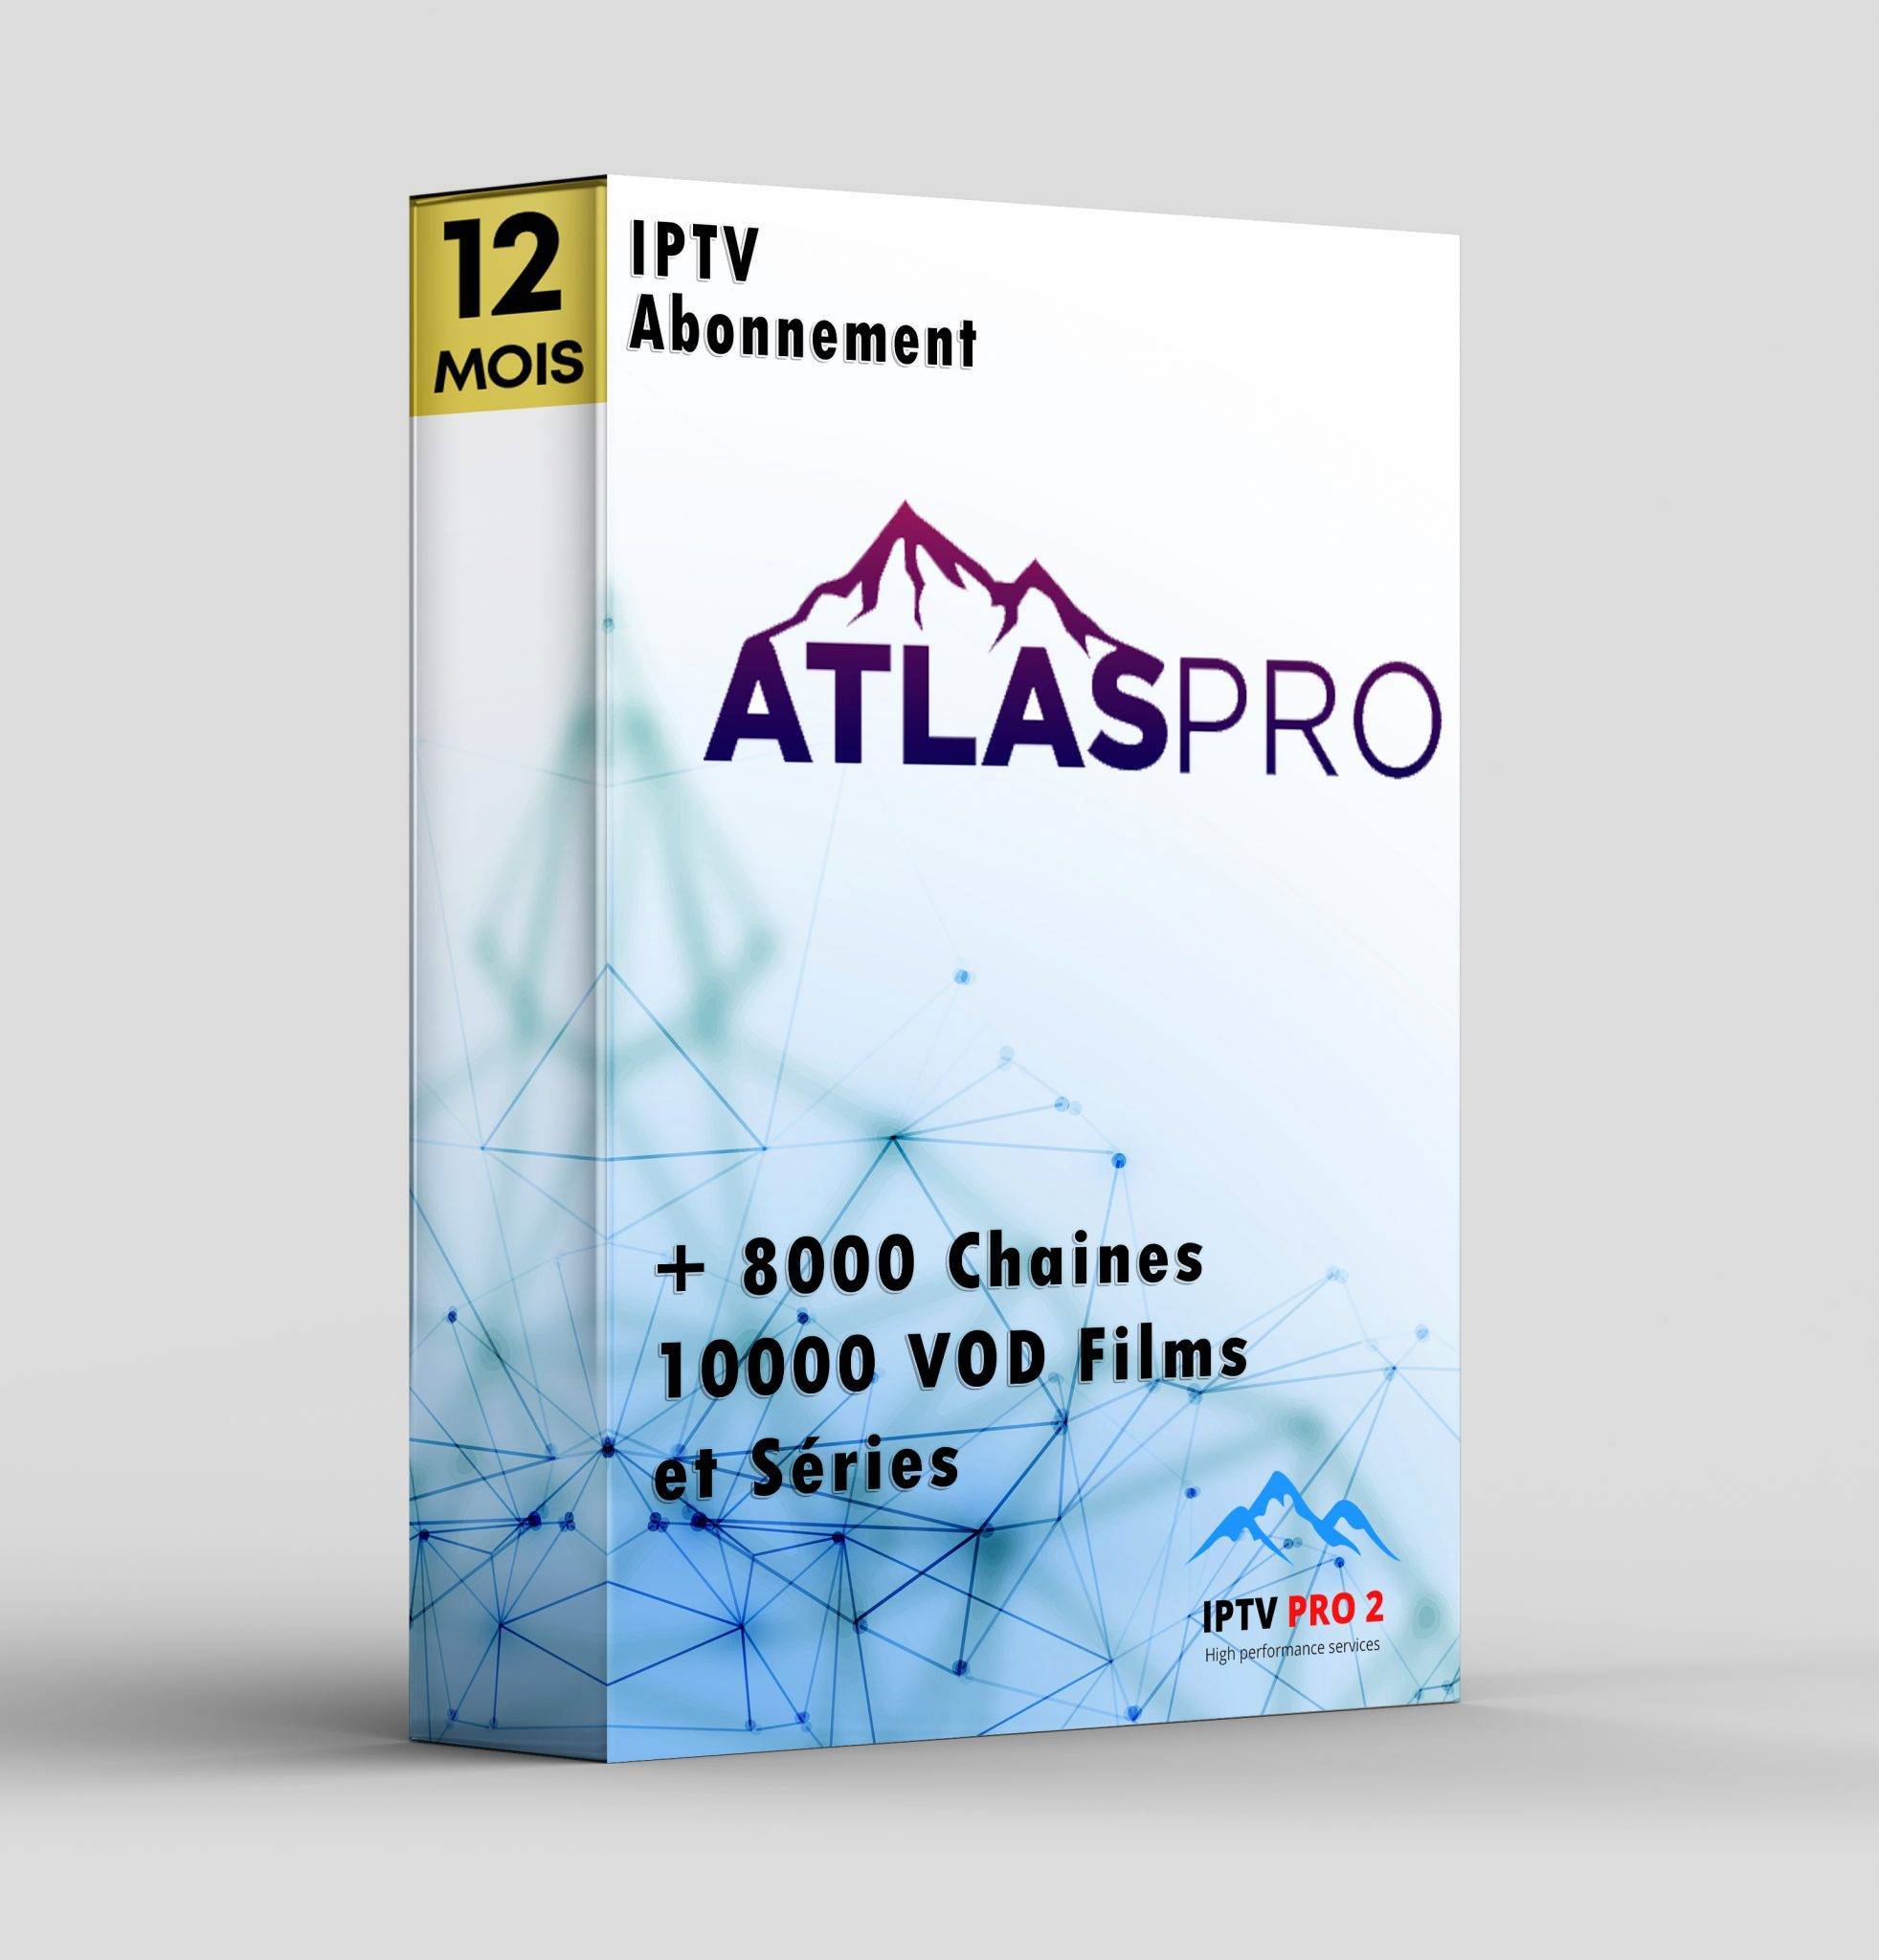 Atlas Pro Ontv Abonnement 12 Mois Iptv France qhdtvpro2